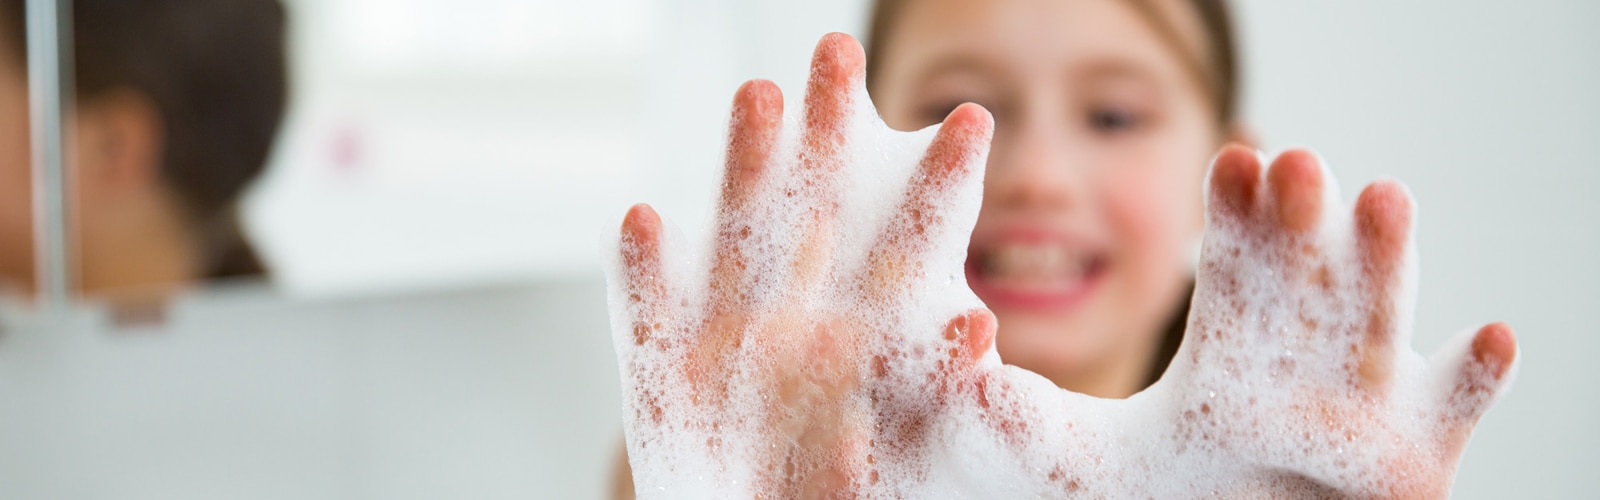 Tytön käsi saippuavaahdossa